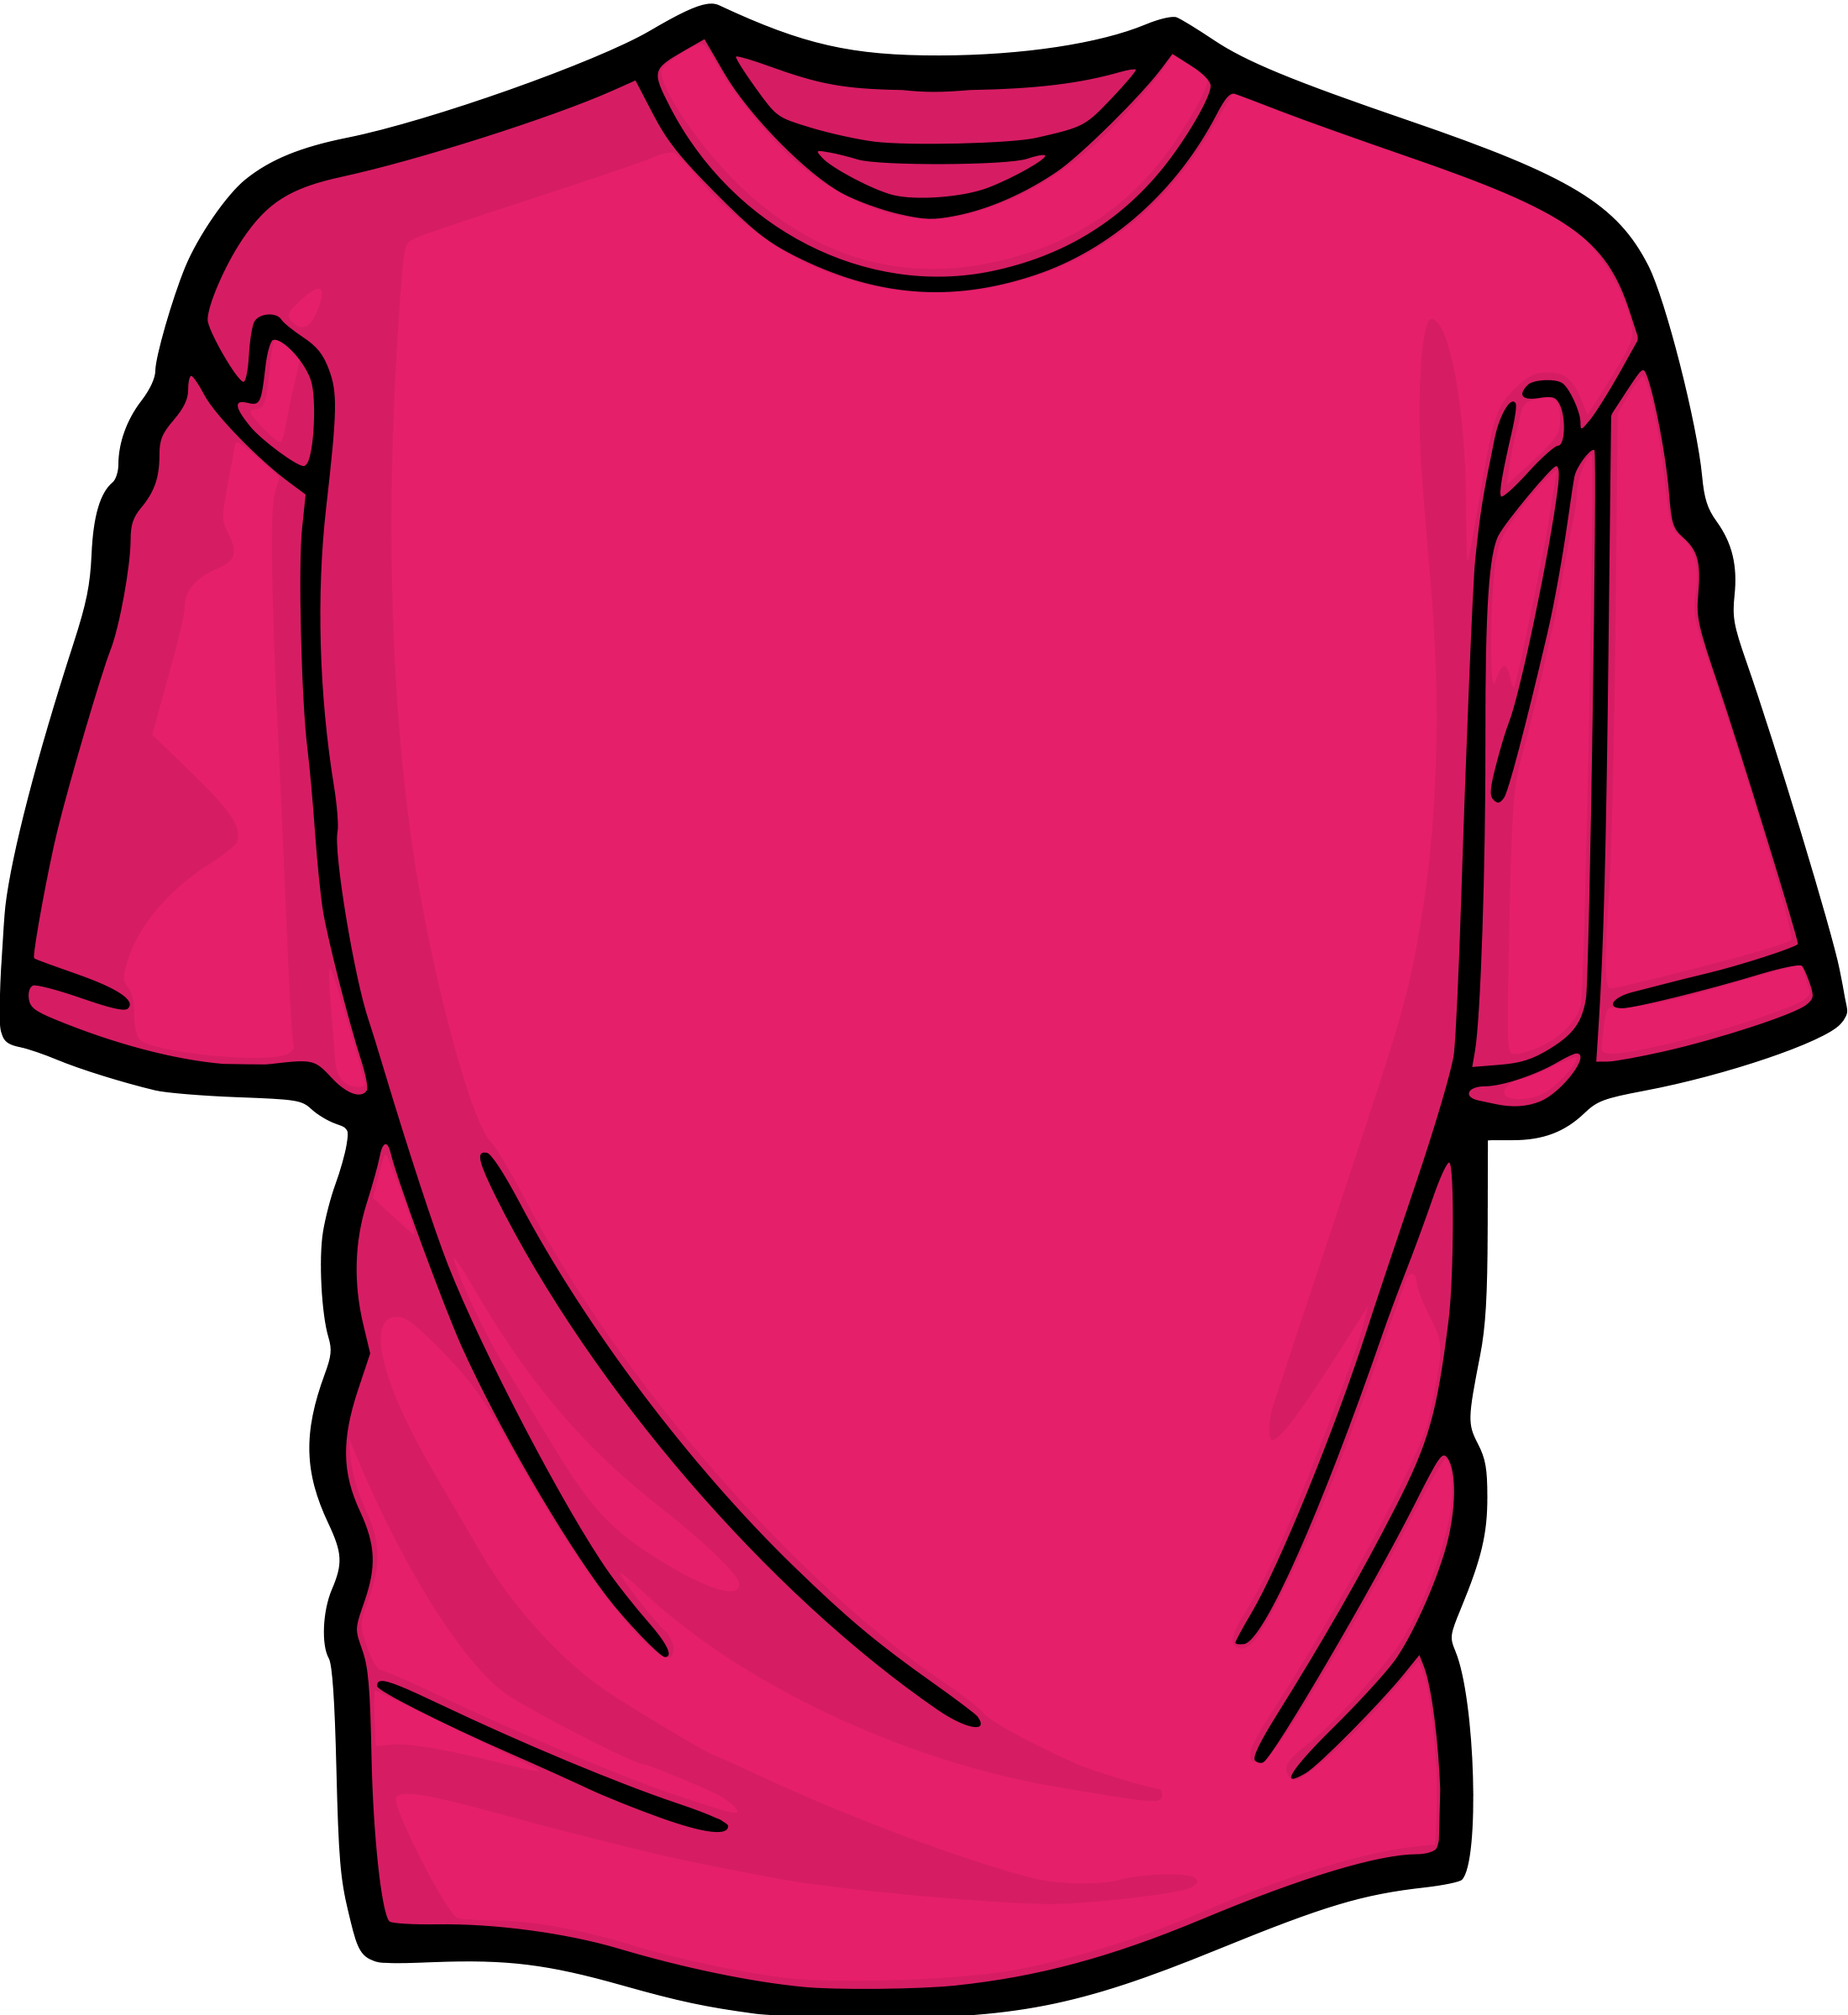 T shirt shirt clip art softwa